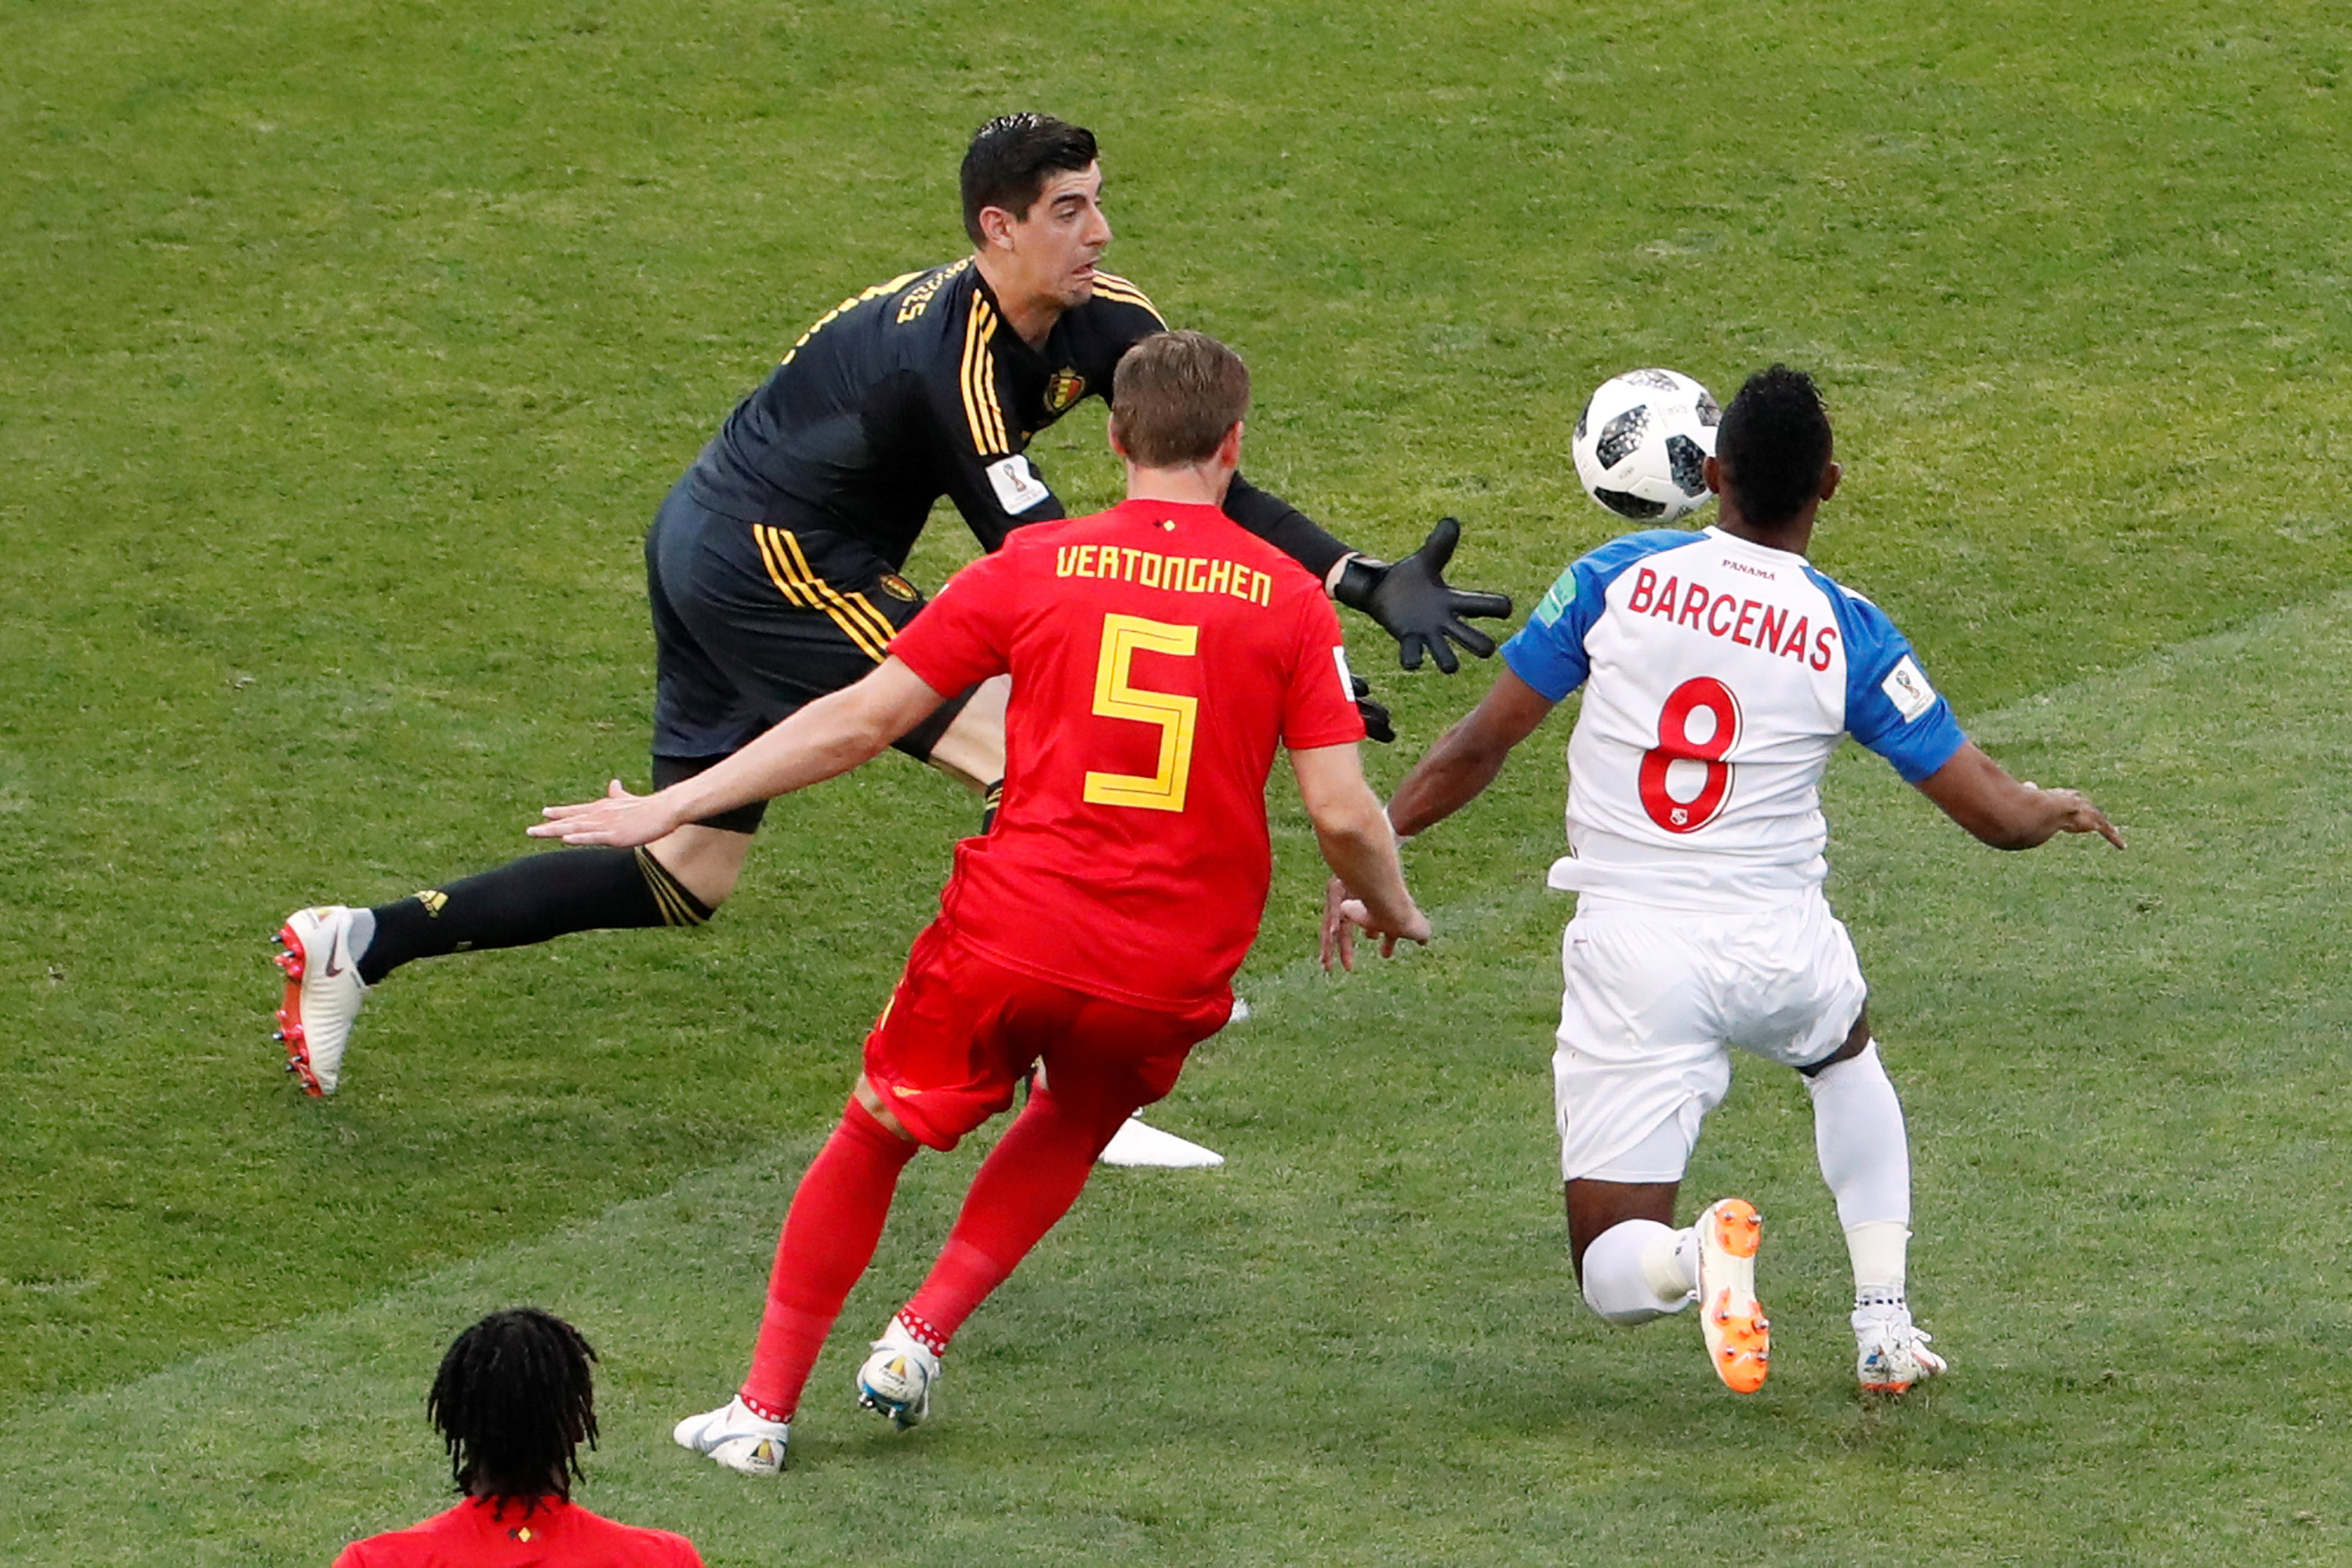 Titular da seleção belga, Courtois é o novo goleiro do Real Madrid